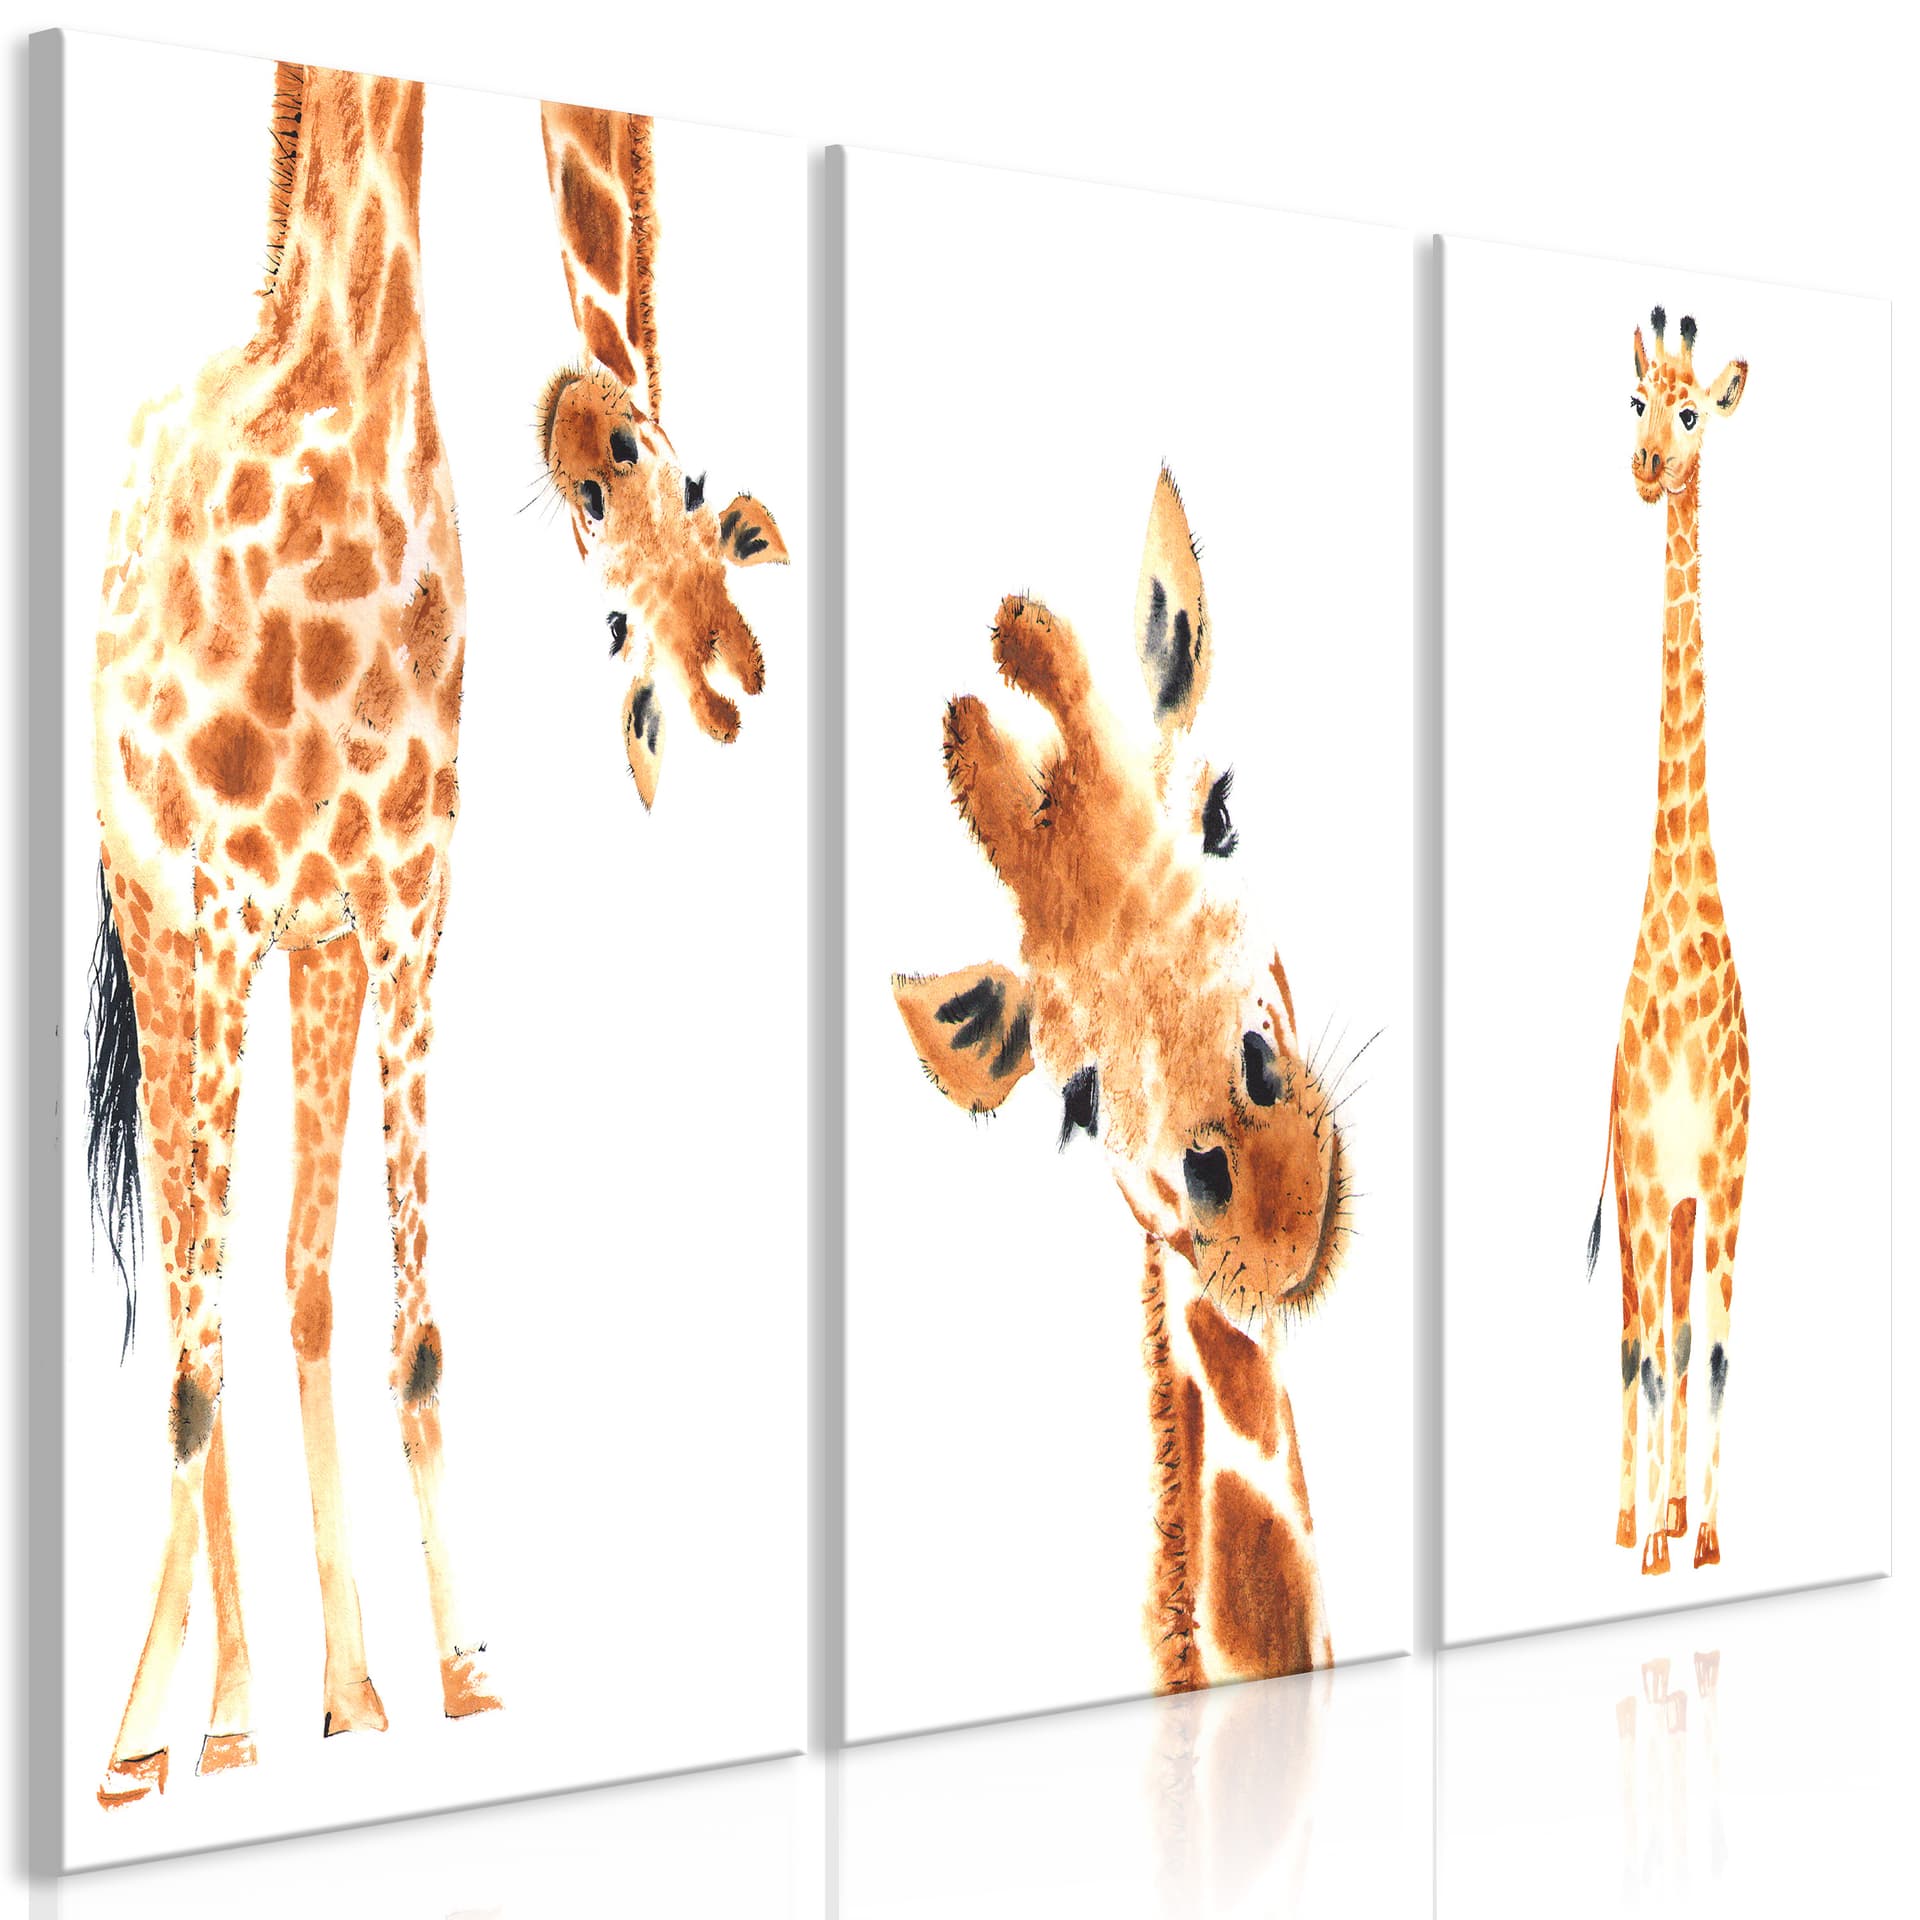 Obraz - Śmieszne żyrafy (3-częściowy) (rozmiar 60x30)